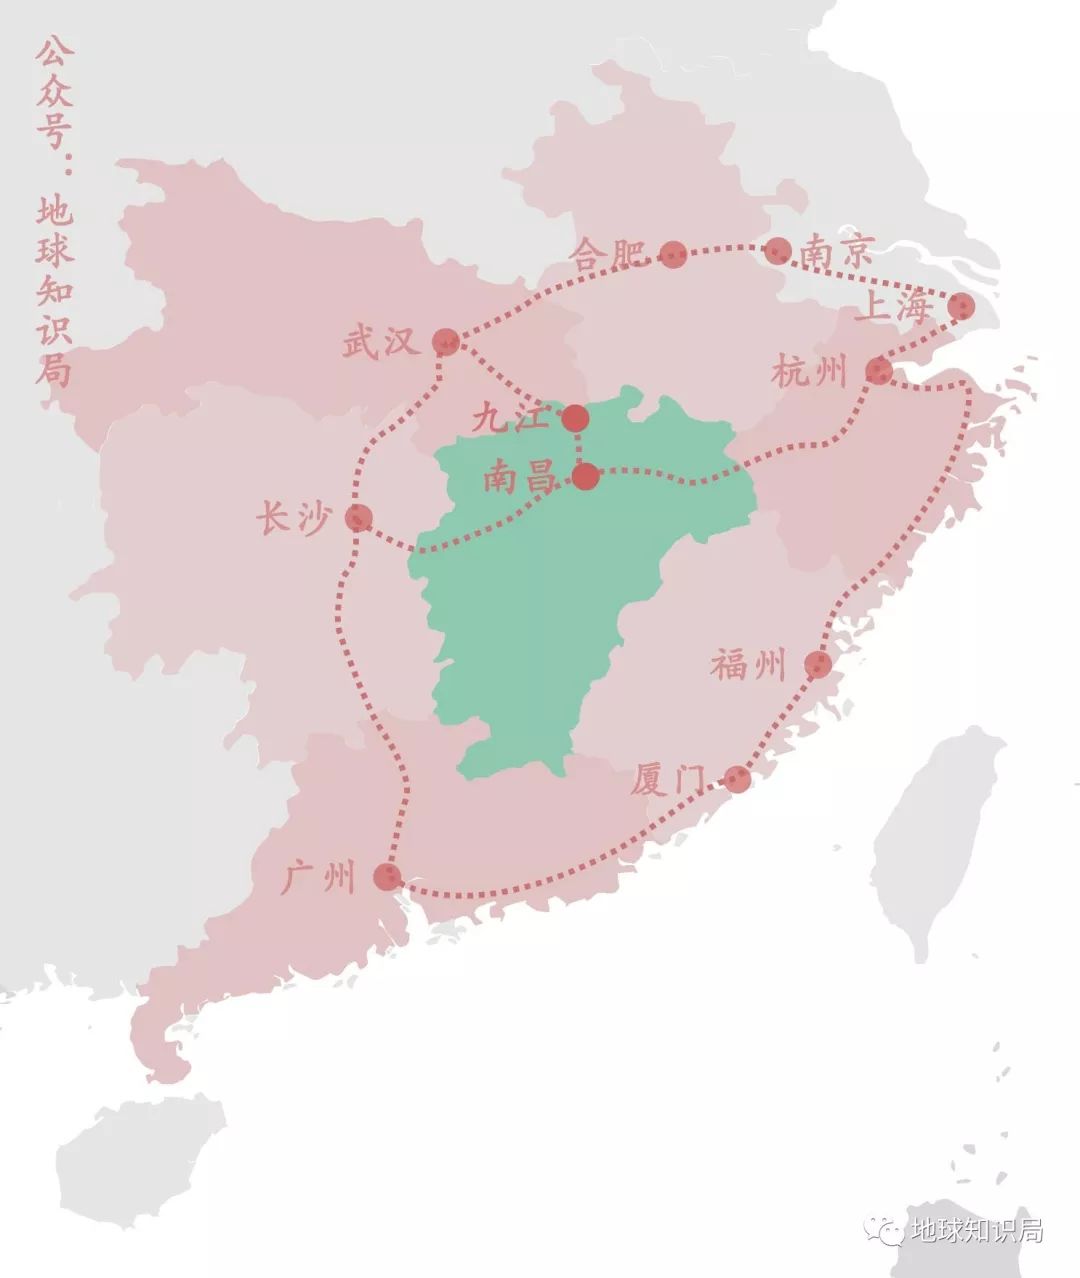 虽然也连上了九江南昌,但江西南北还没打通隔壁省份的环江西高铁都